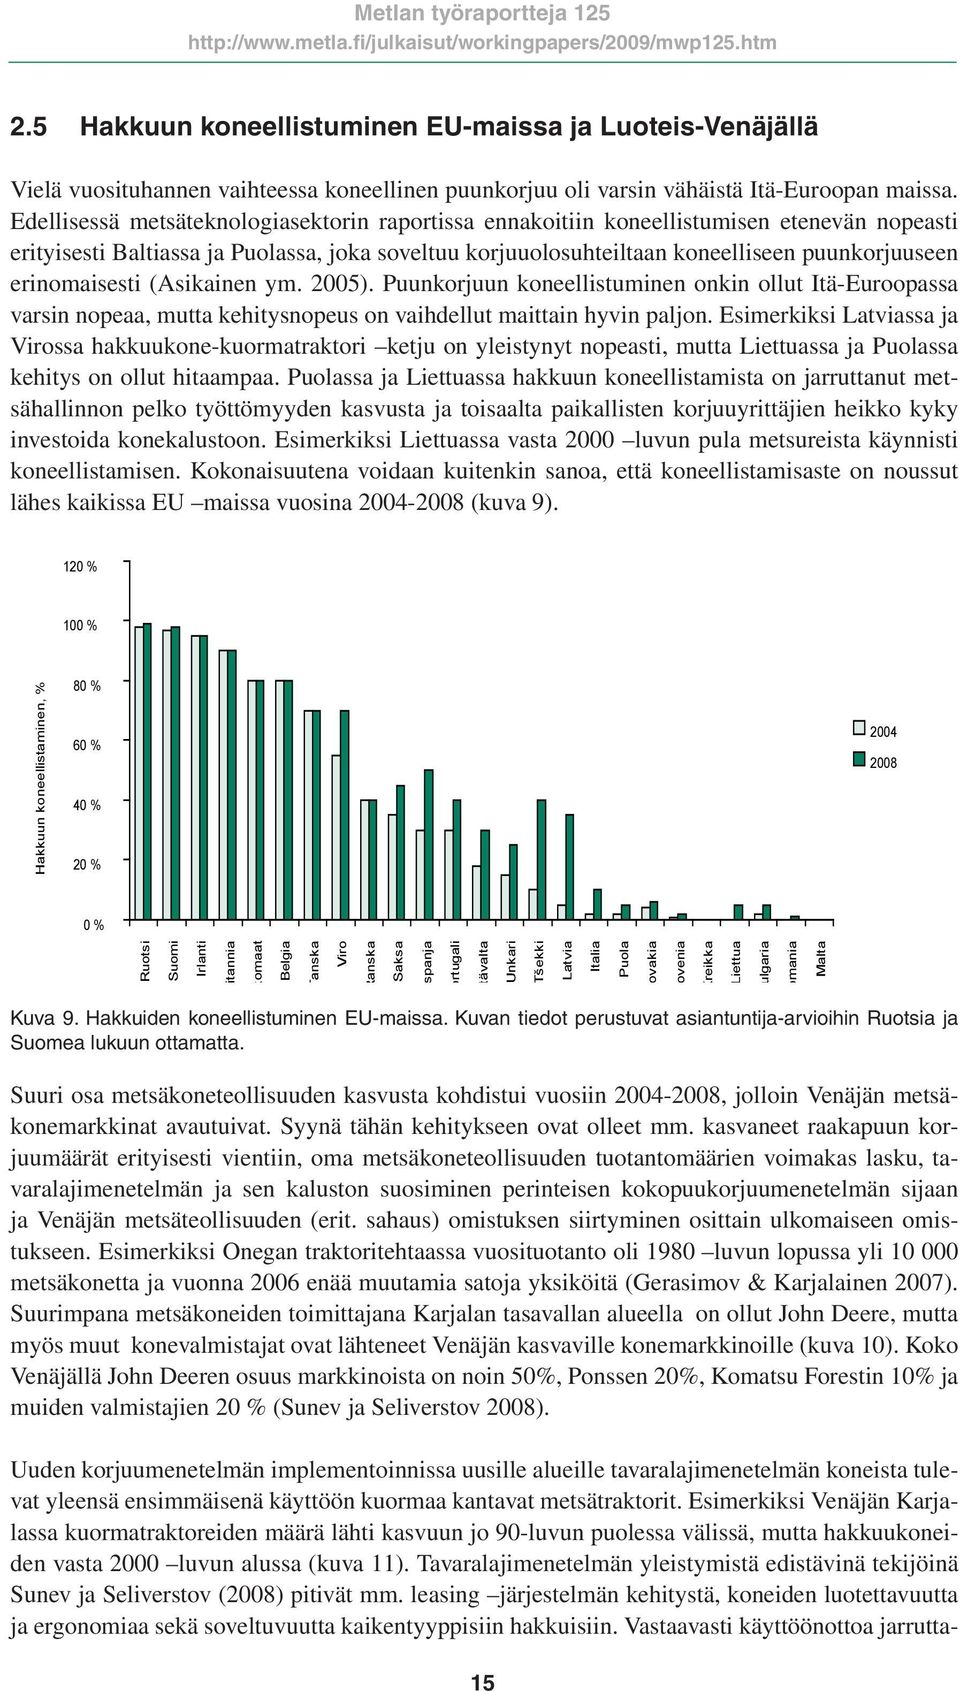 erinomaisesti (Asikainen ym. 2005). Puunkorjuun koneellistuminen onkin ollut Itä-Euroopassa varsin nopeaa, mutta kehitysnopeus on vaihdellut maittain hyvin paljon.